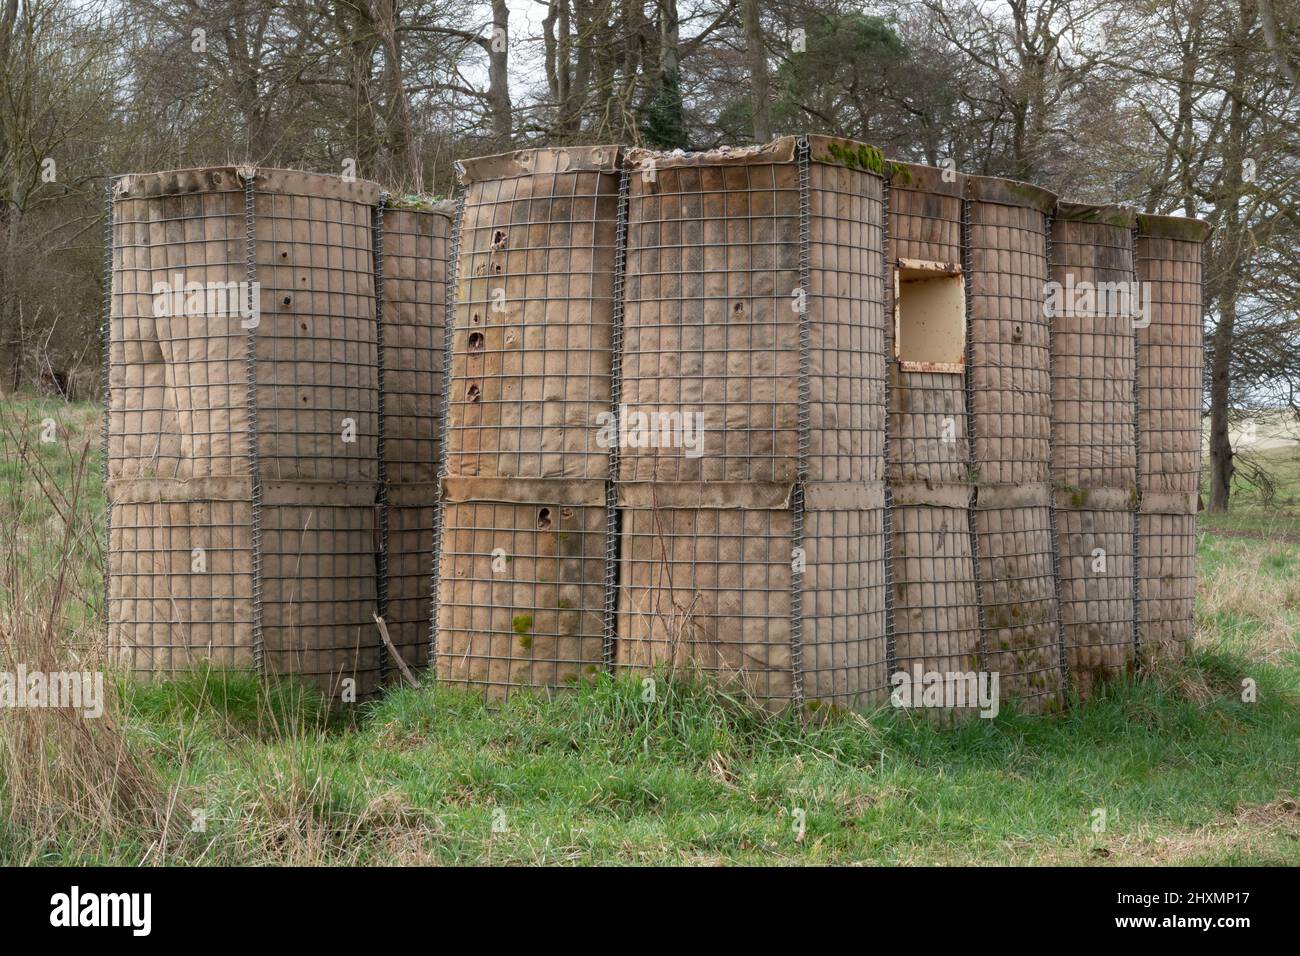 Esercito britannico soldato addestramento edificio fortificato, scatola di pillole Foto Stock